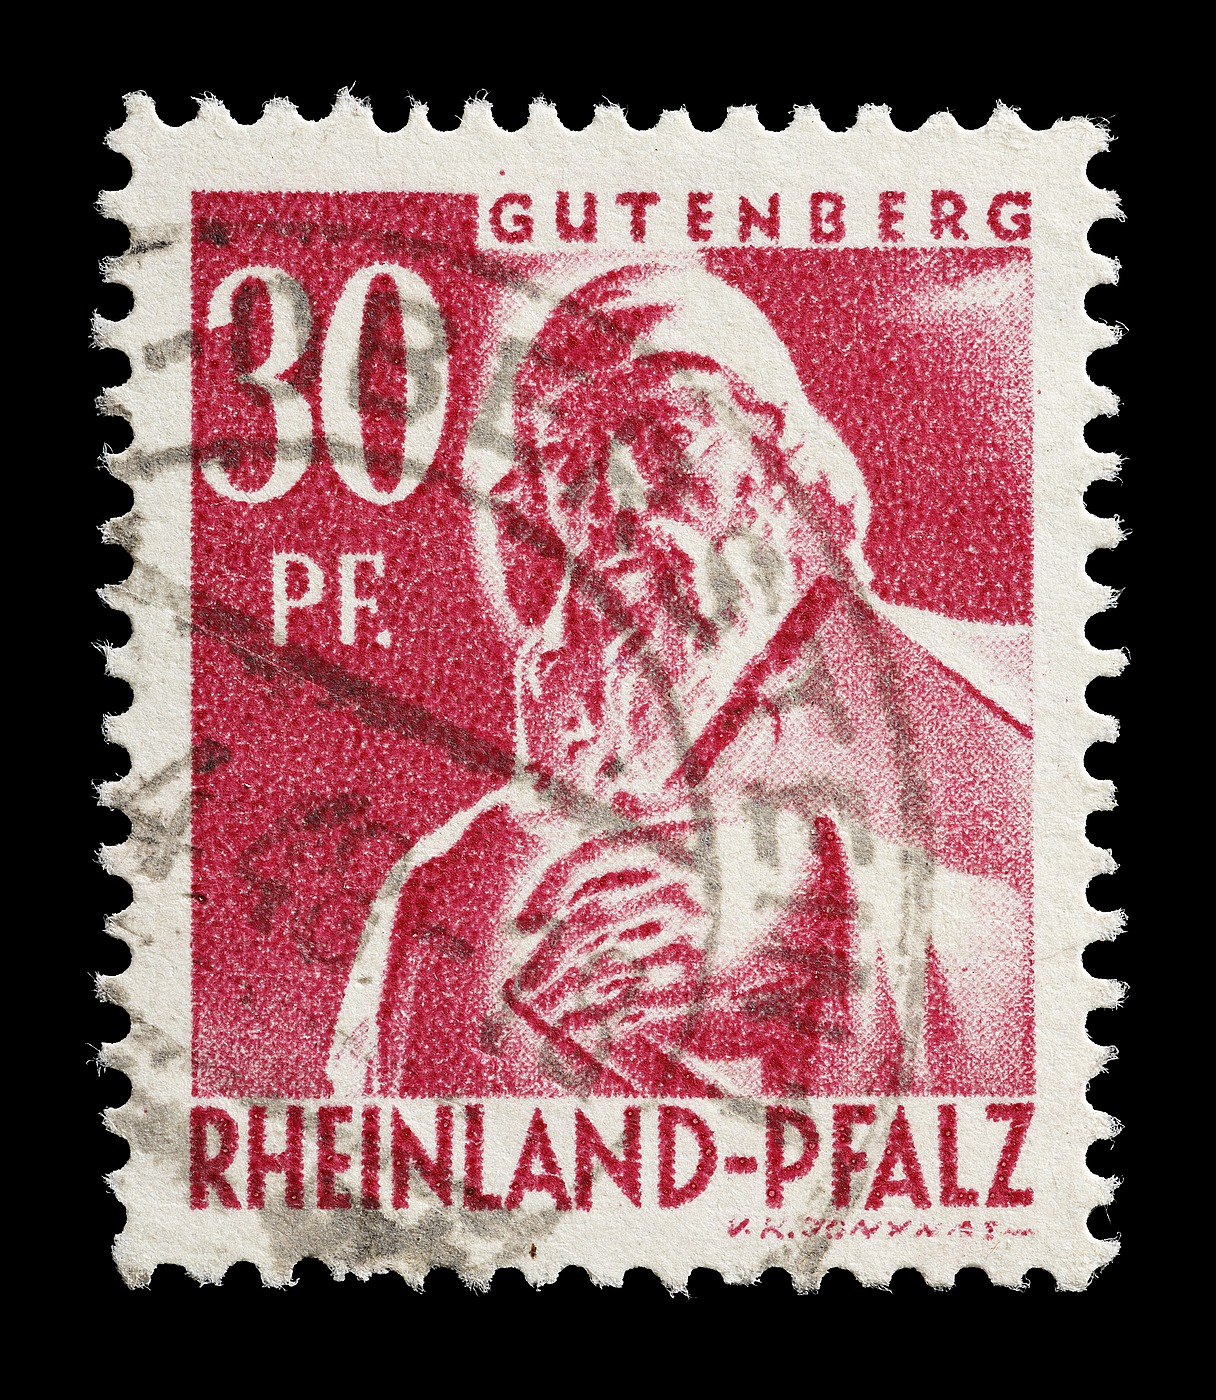 Frimærke udgivet i den franske besættelseszone, Rheinland-Pfalz med Thorvaldsens statue af Johann Gutenberg